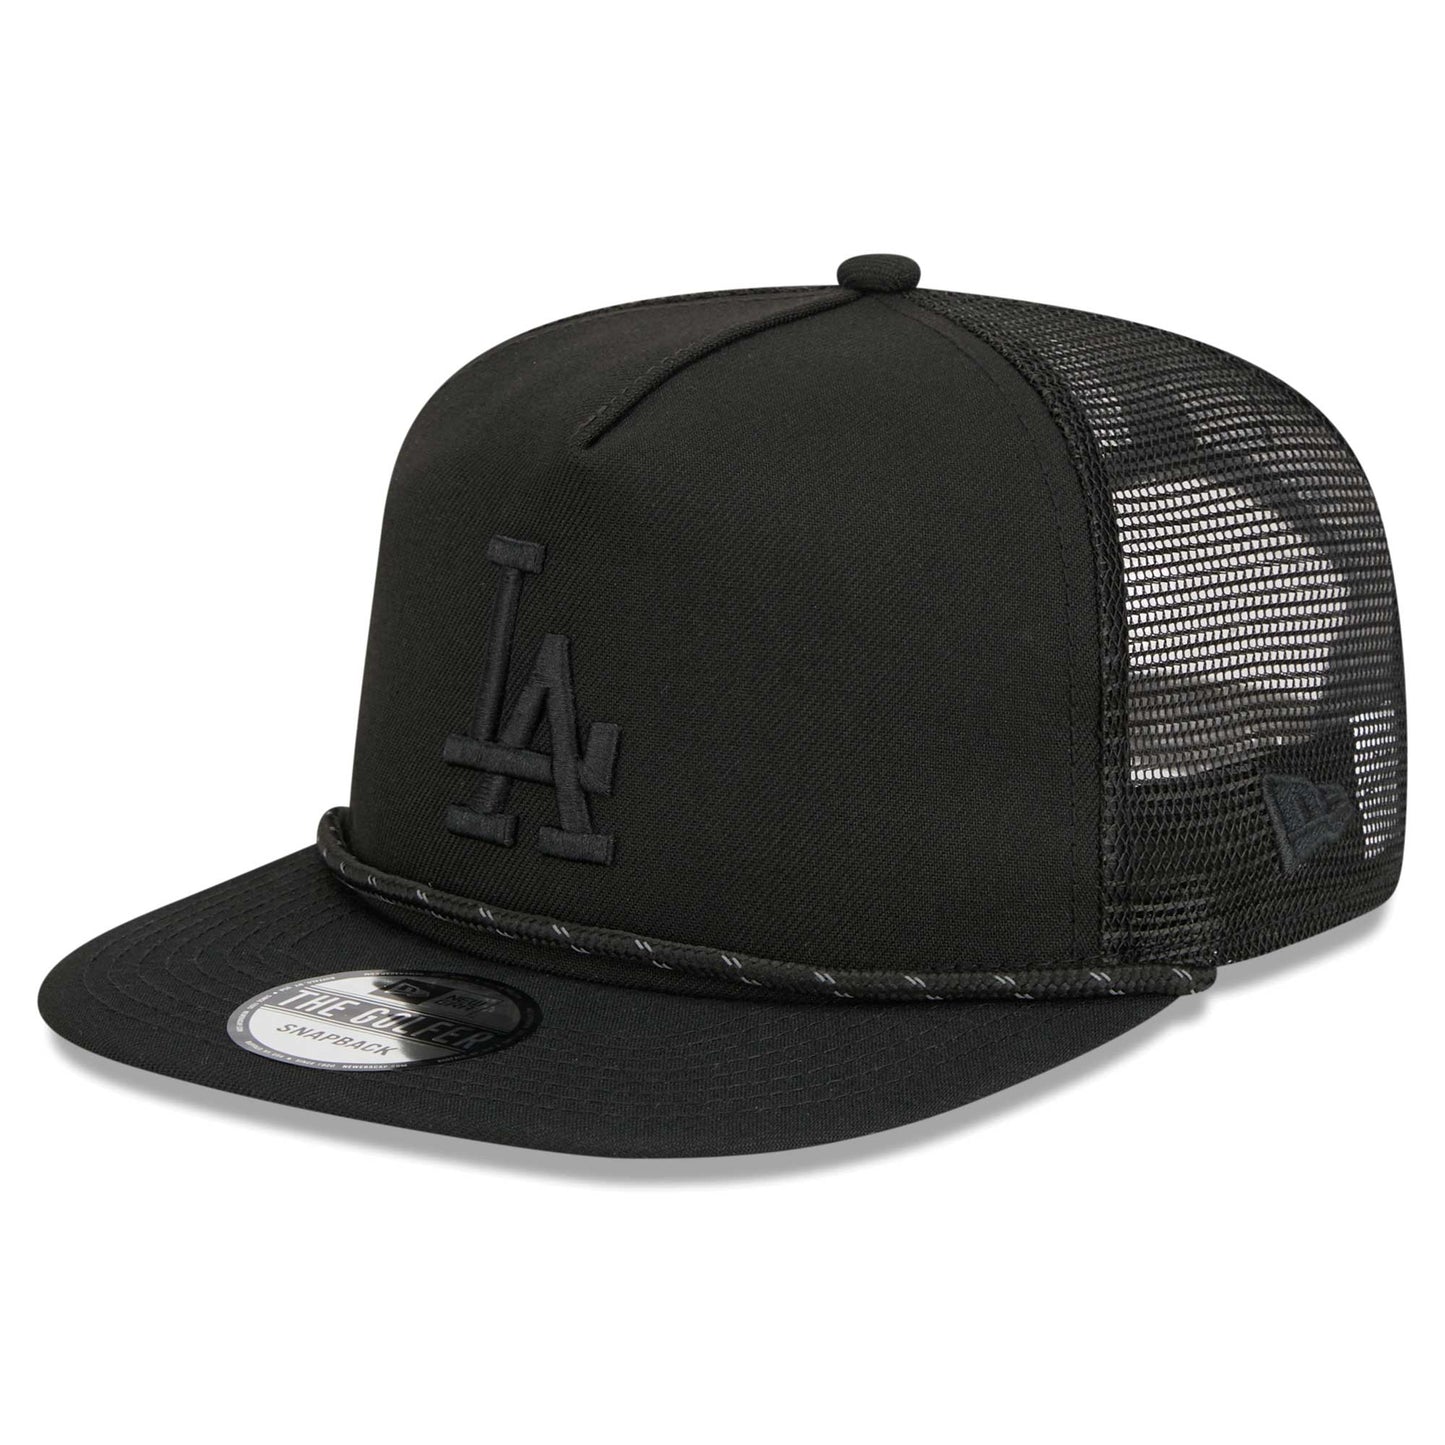 Los Angeles Dodgers New Era Black on Black Meshback Golfer Snapback Hat